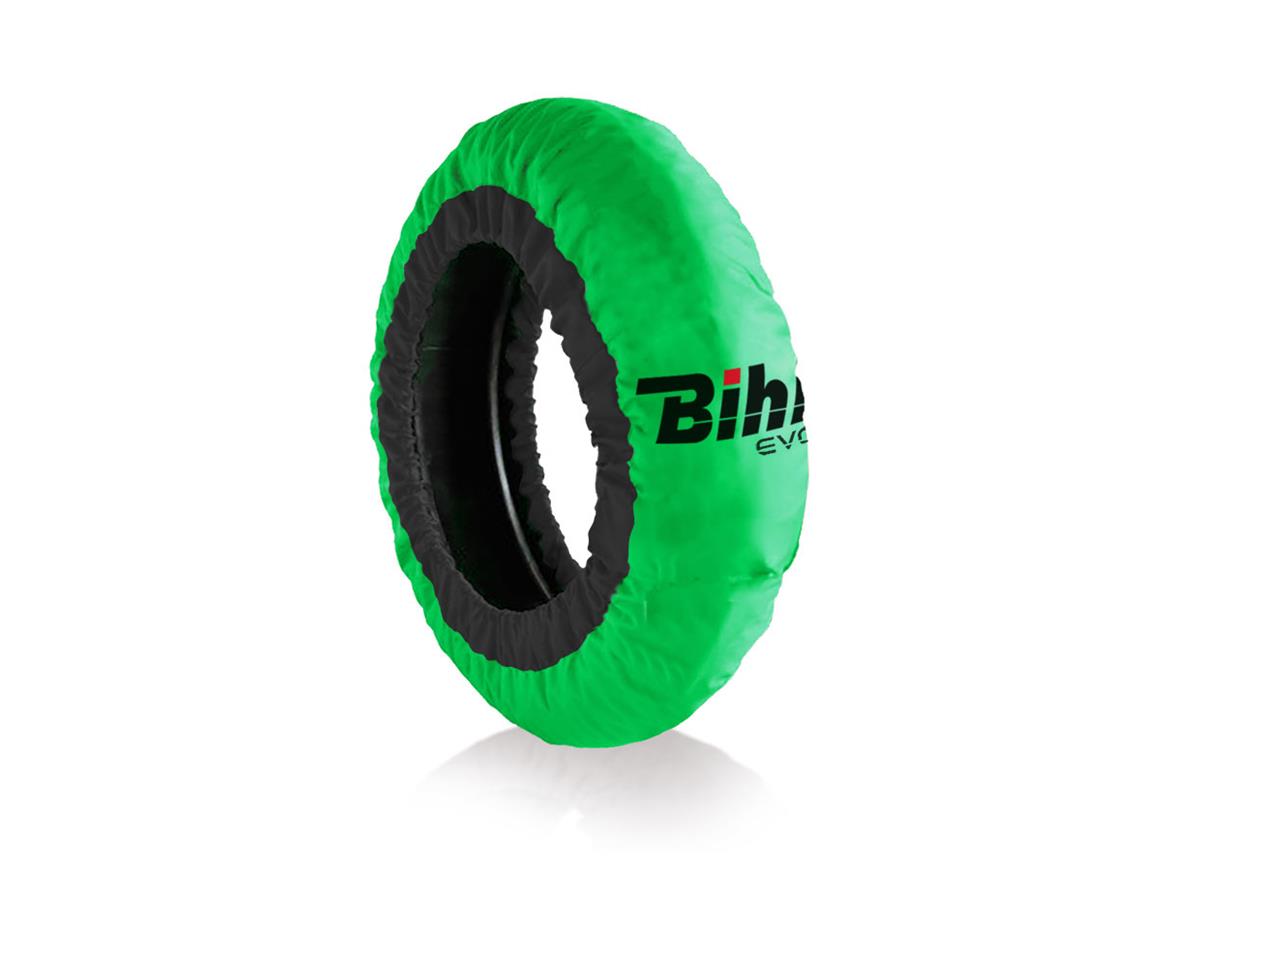 Couvertures chauffantes pneus 180-200mm marque Bihr Home Track Evo2 autorégulée verte